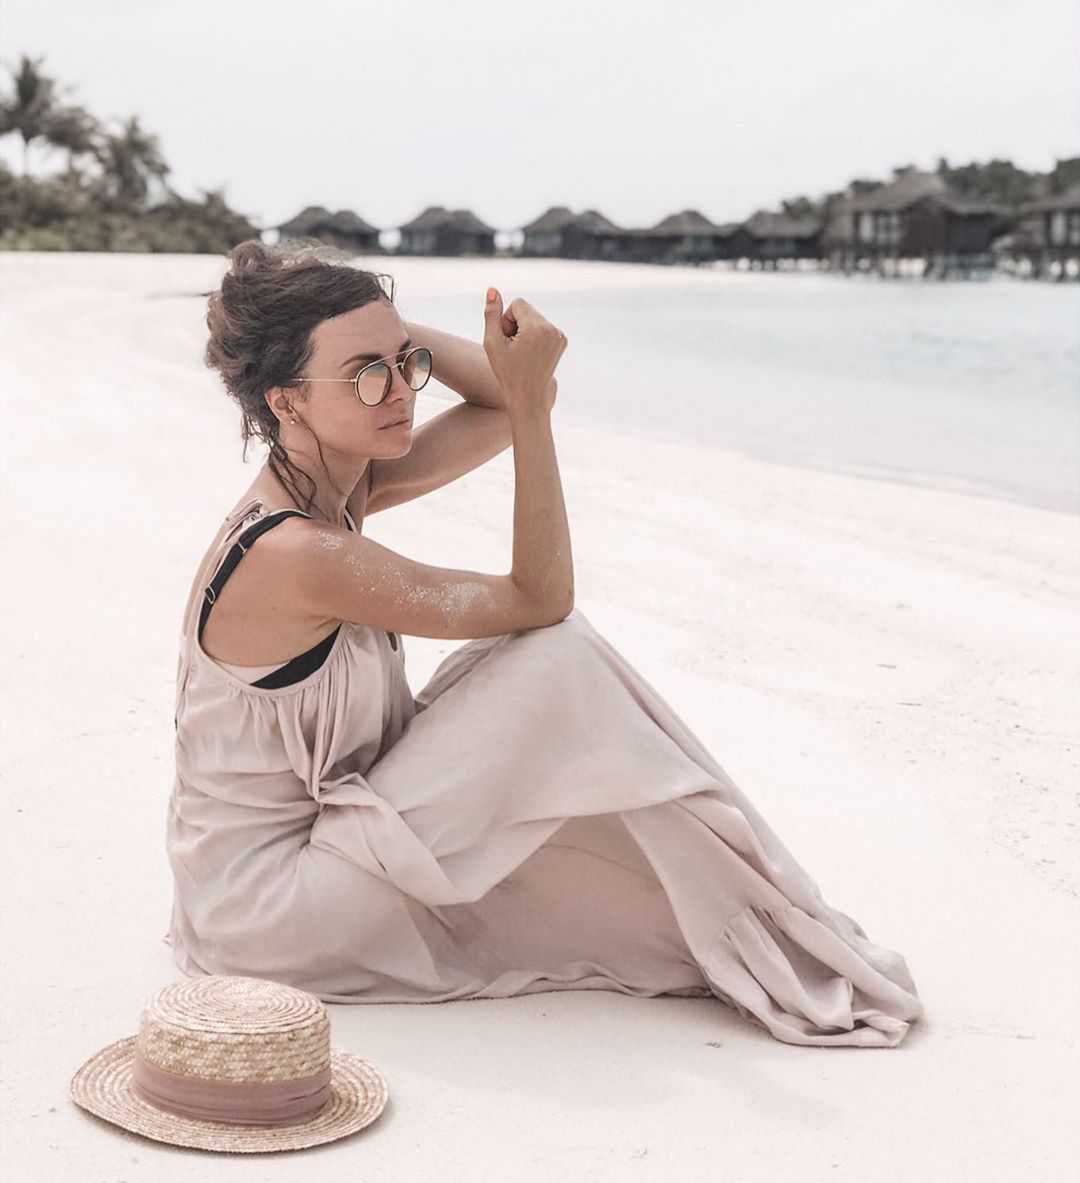 Anna Wendzikowska - Instagram